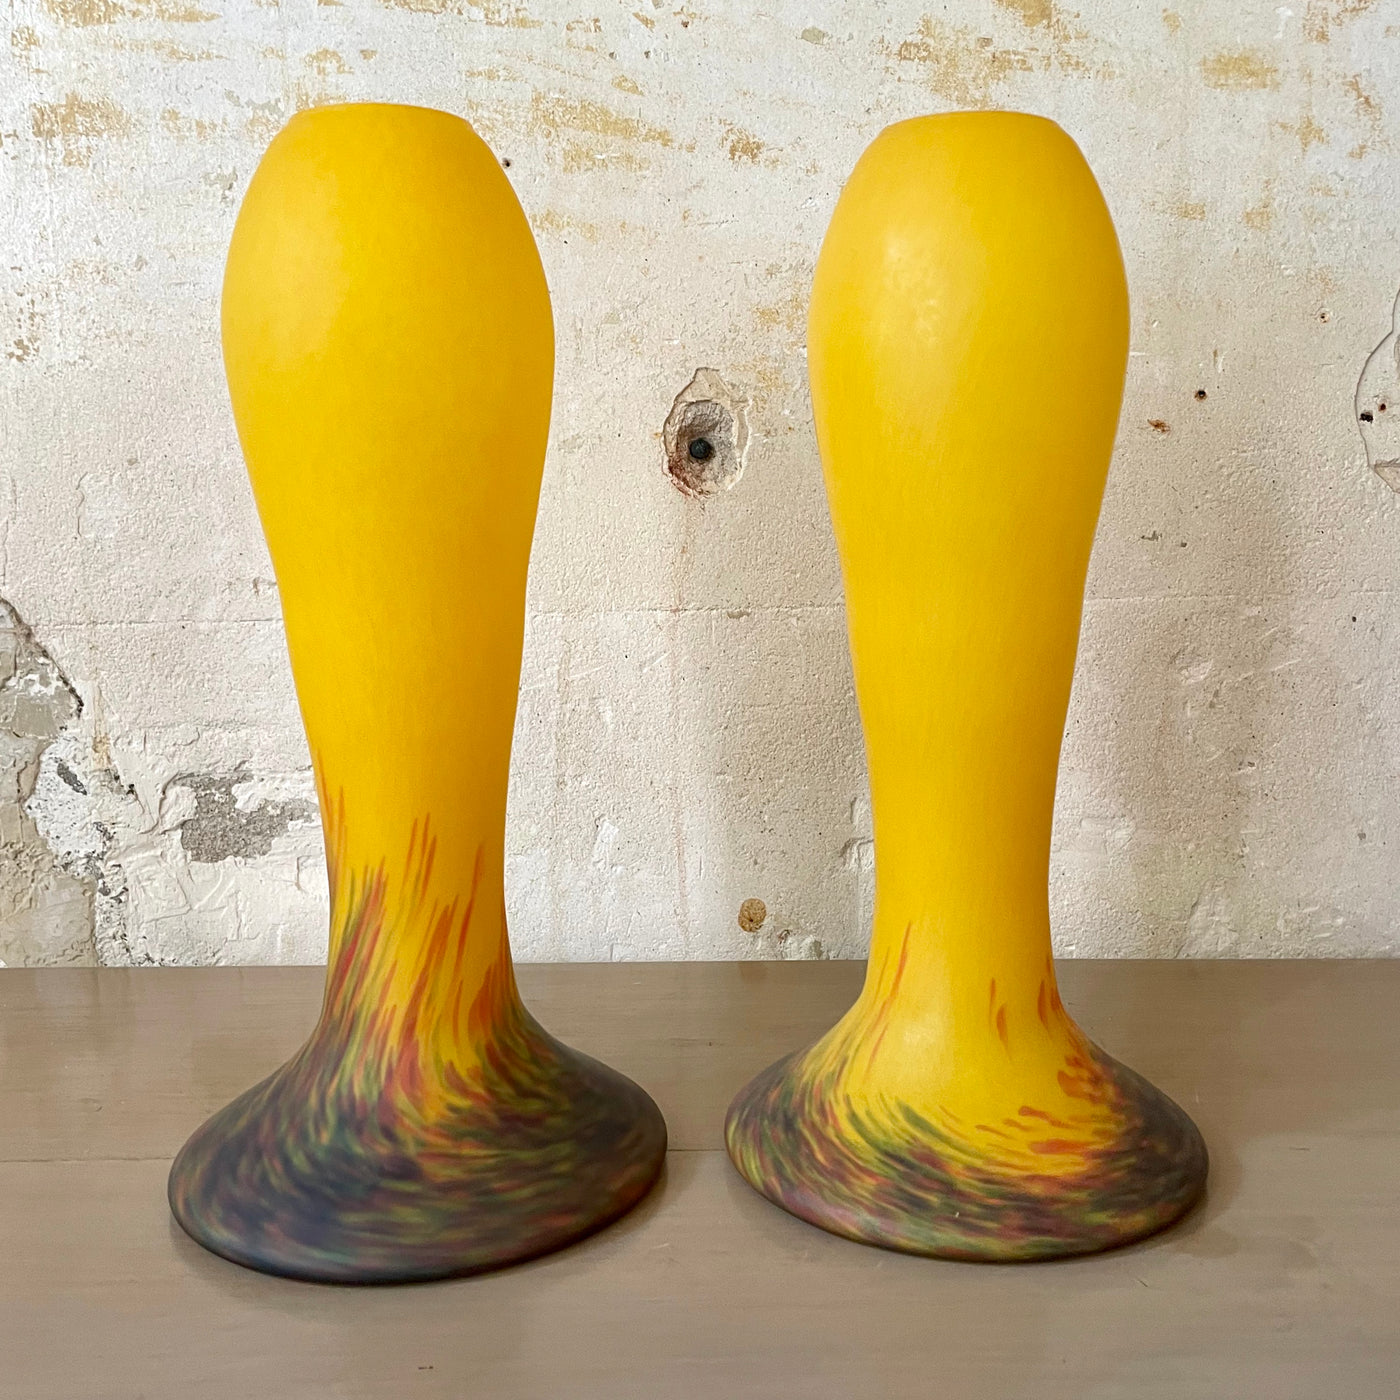 Paire de vases en pâte de verre jaune signés - Vianne